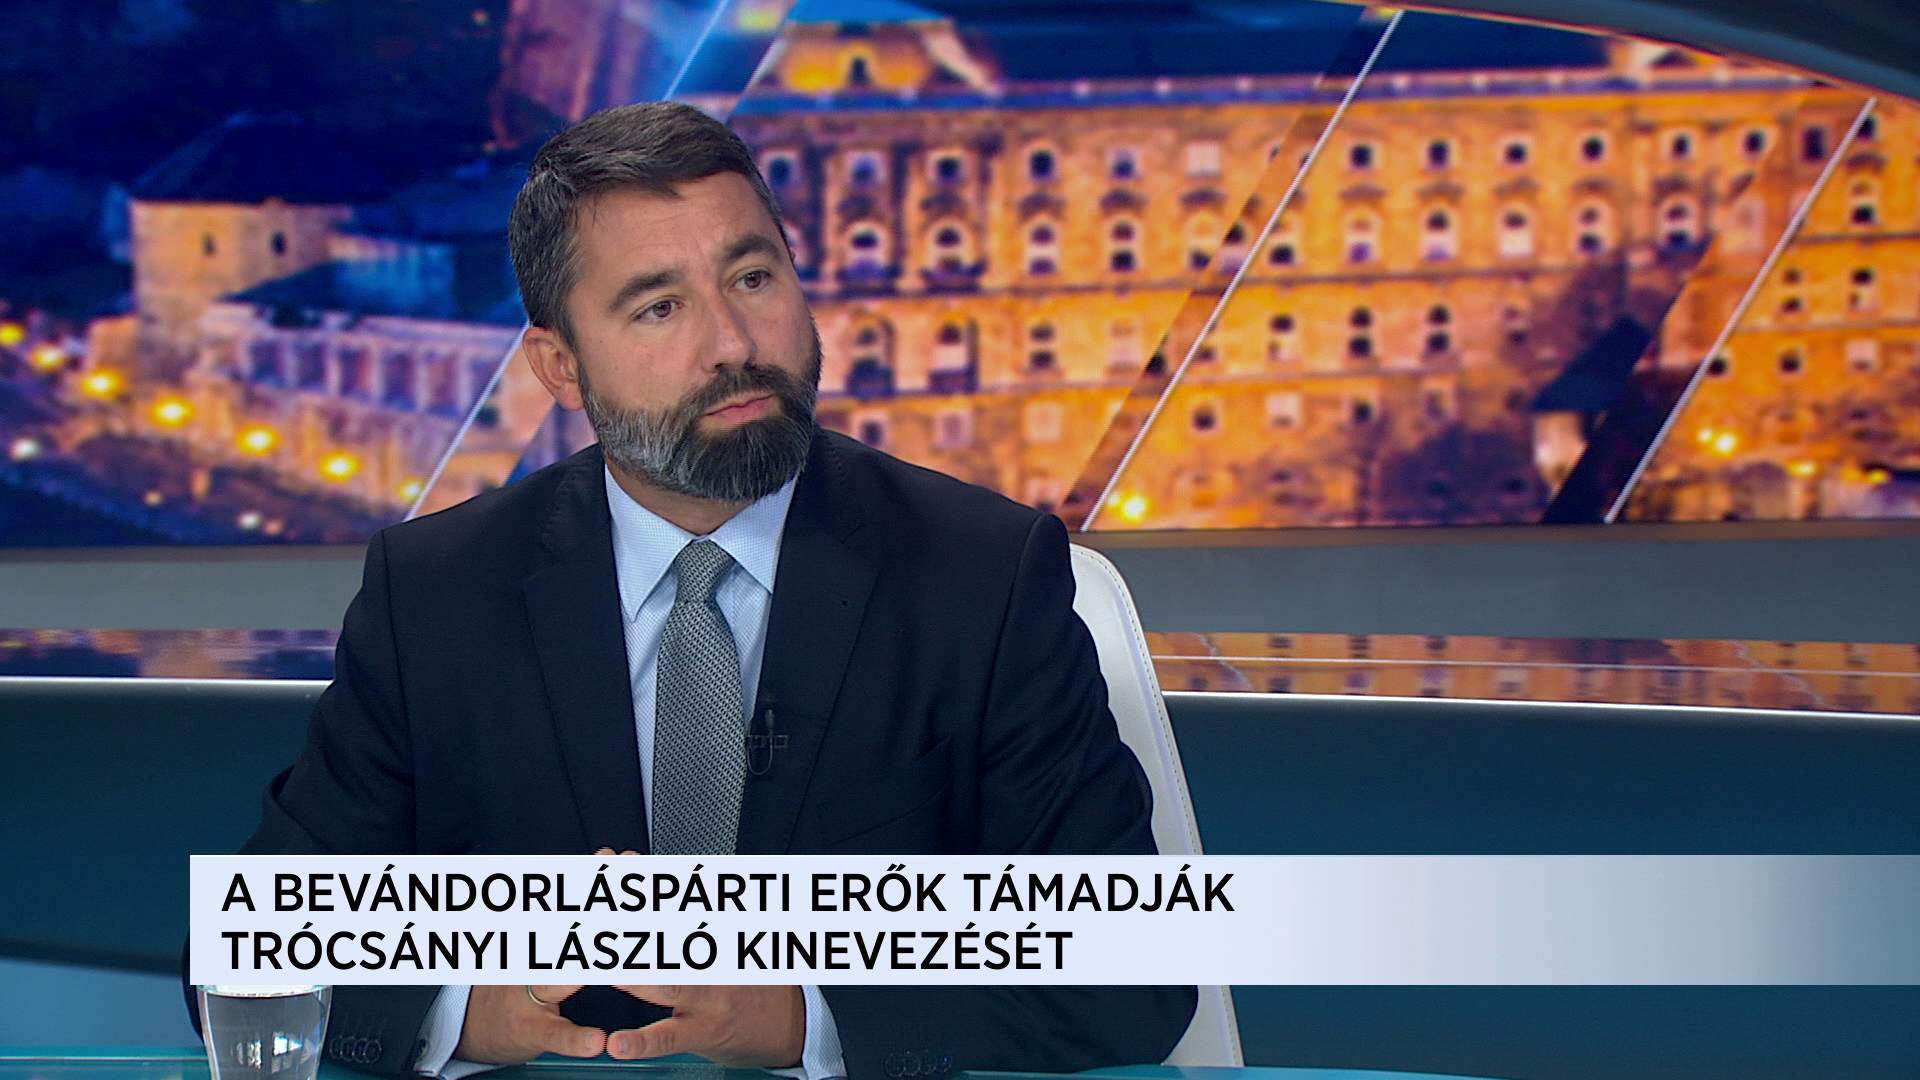 Hidvéghi: Trócsányi László nem csak felkészült, de feddhetetlen jelöltje is Magyarországnak